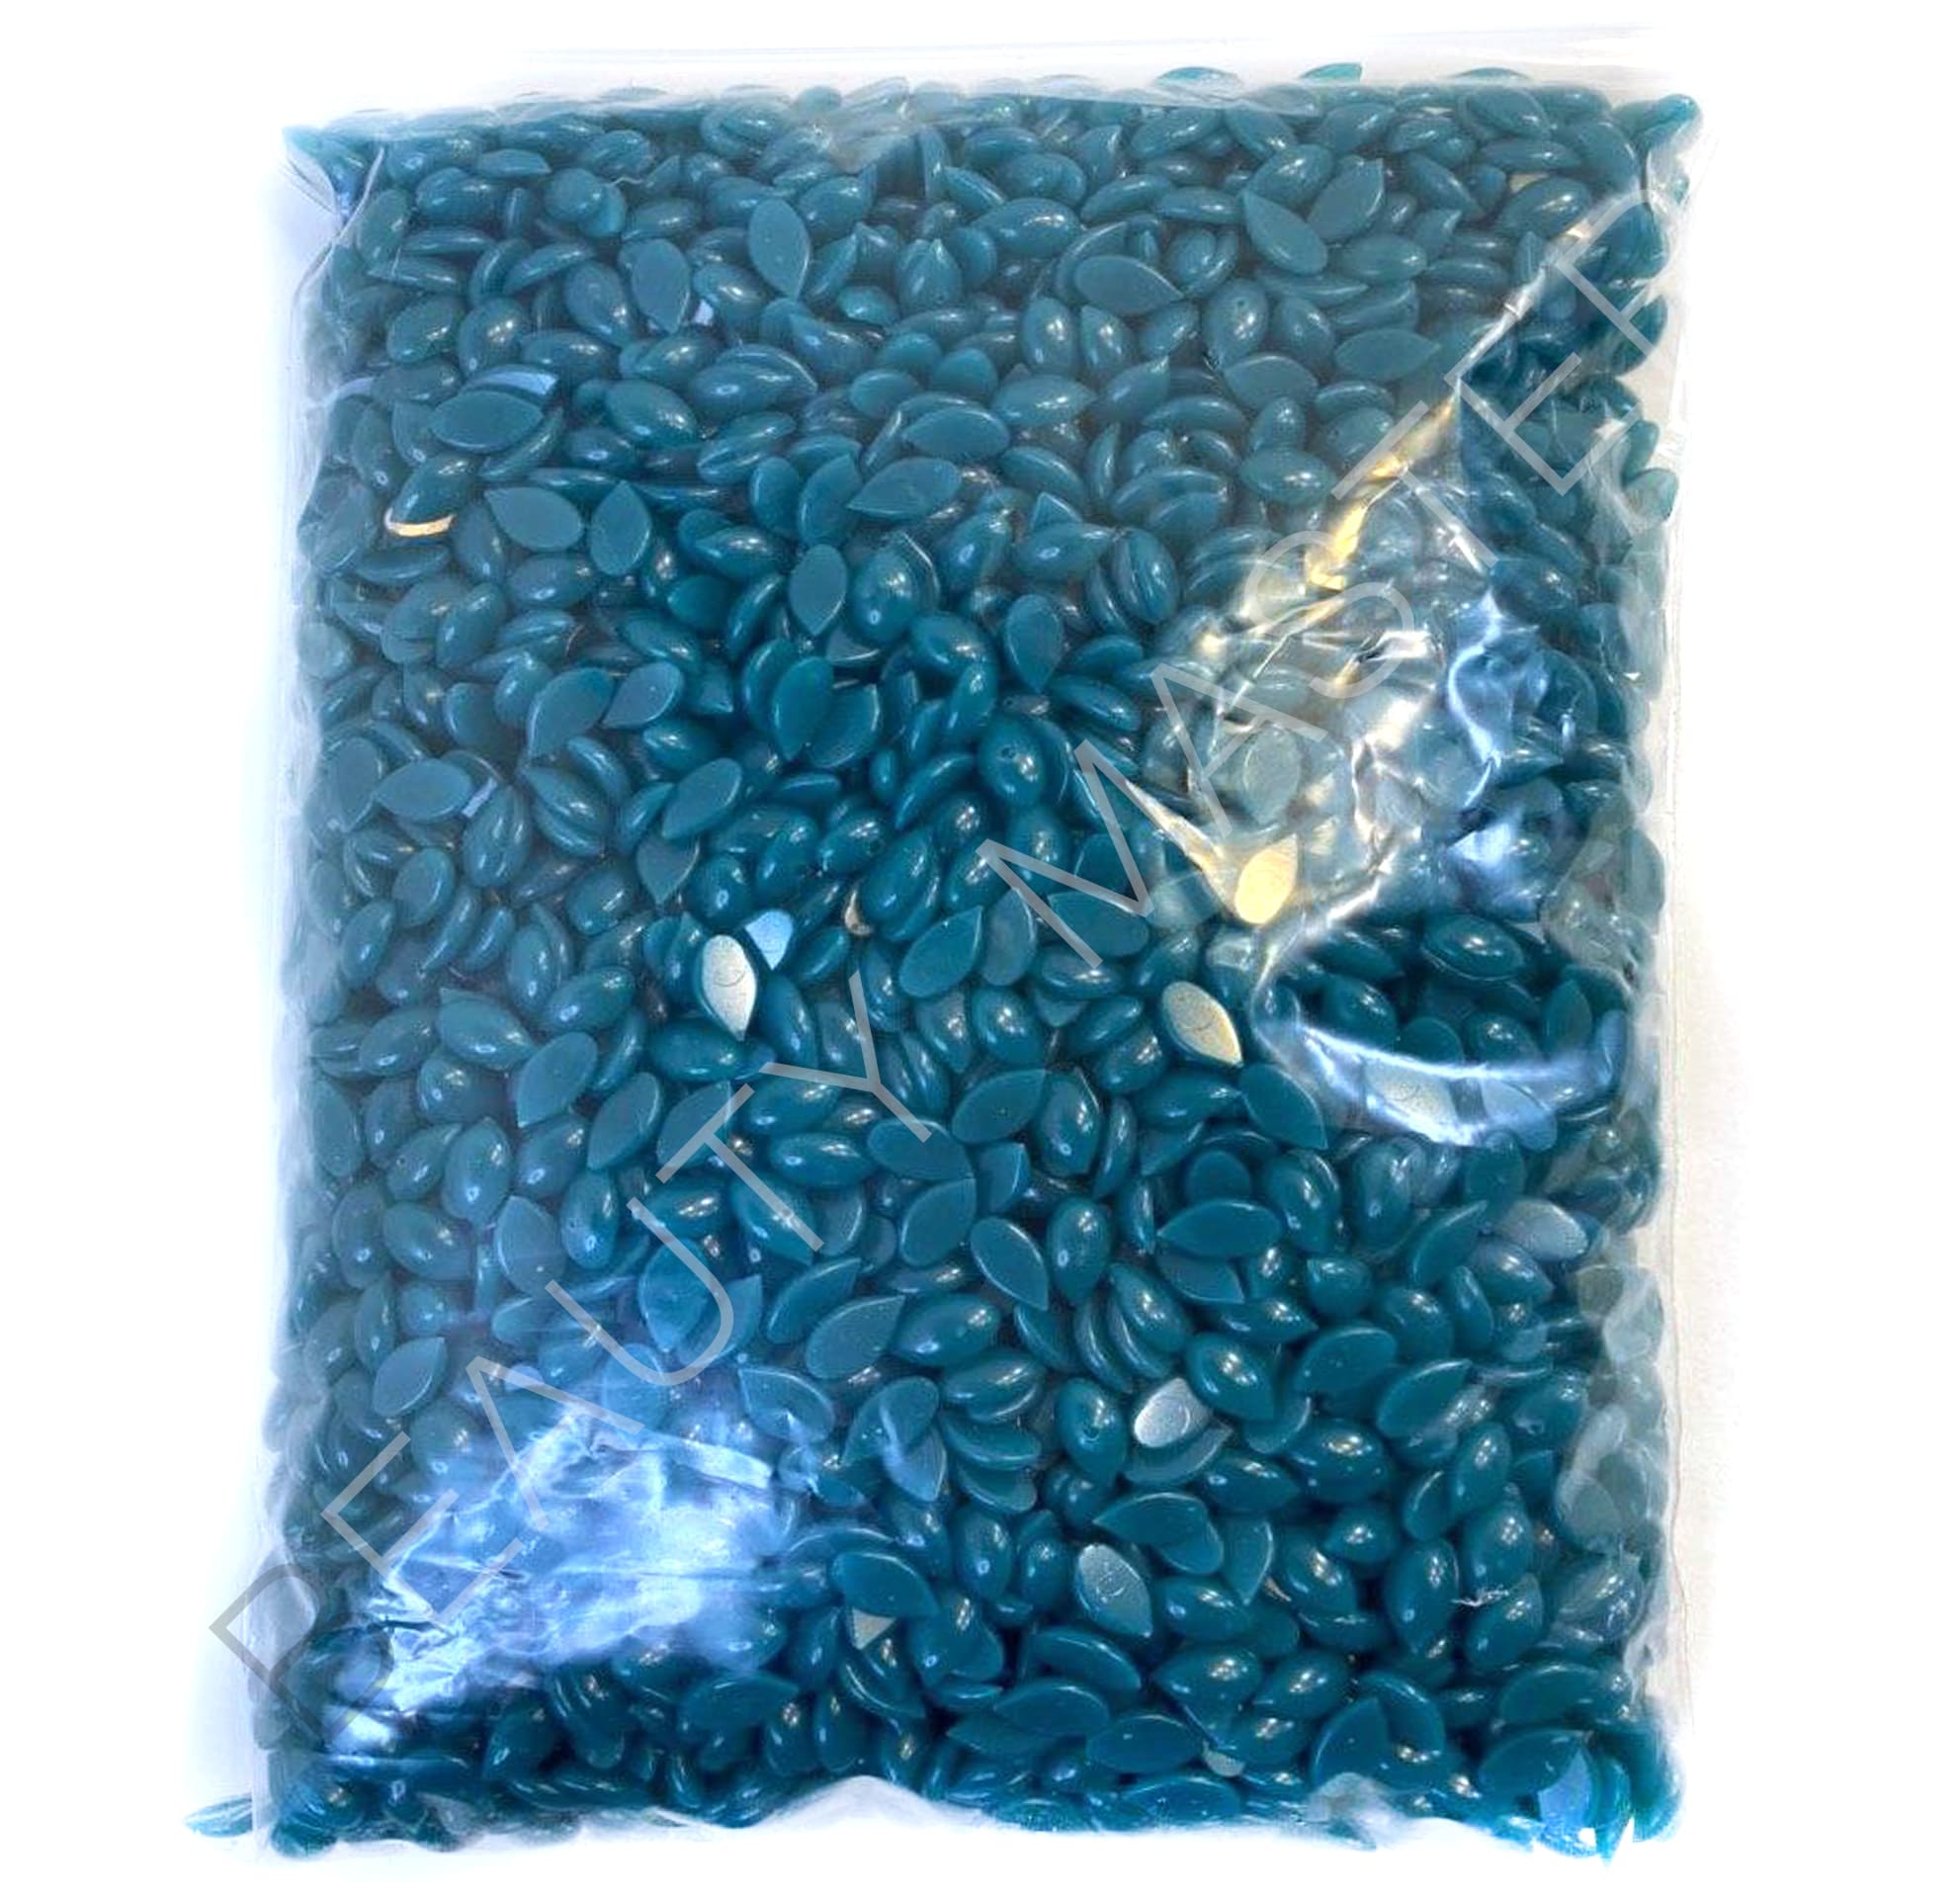 ItalWax Azulene расфасовка 0.5 кг Горячий пленочный воск